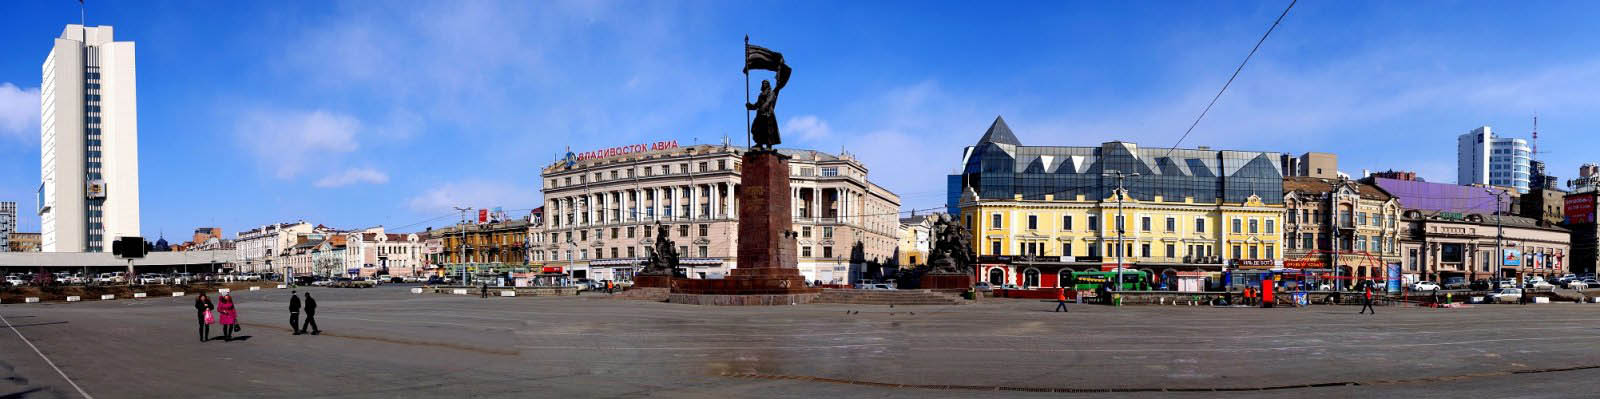 ウラジオストク市内の広場